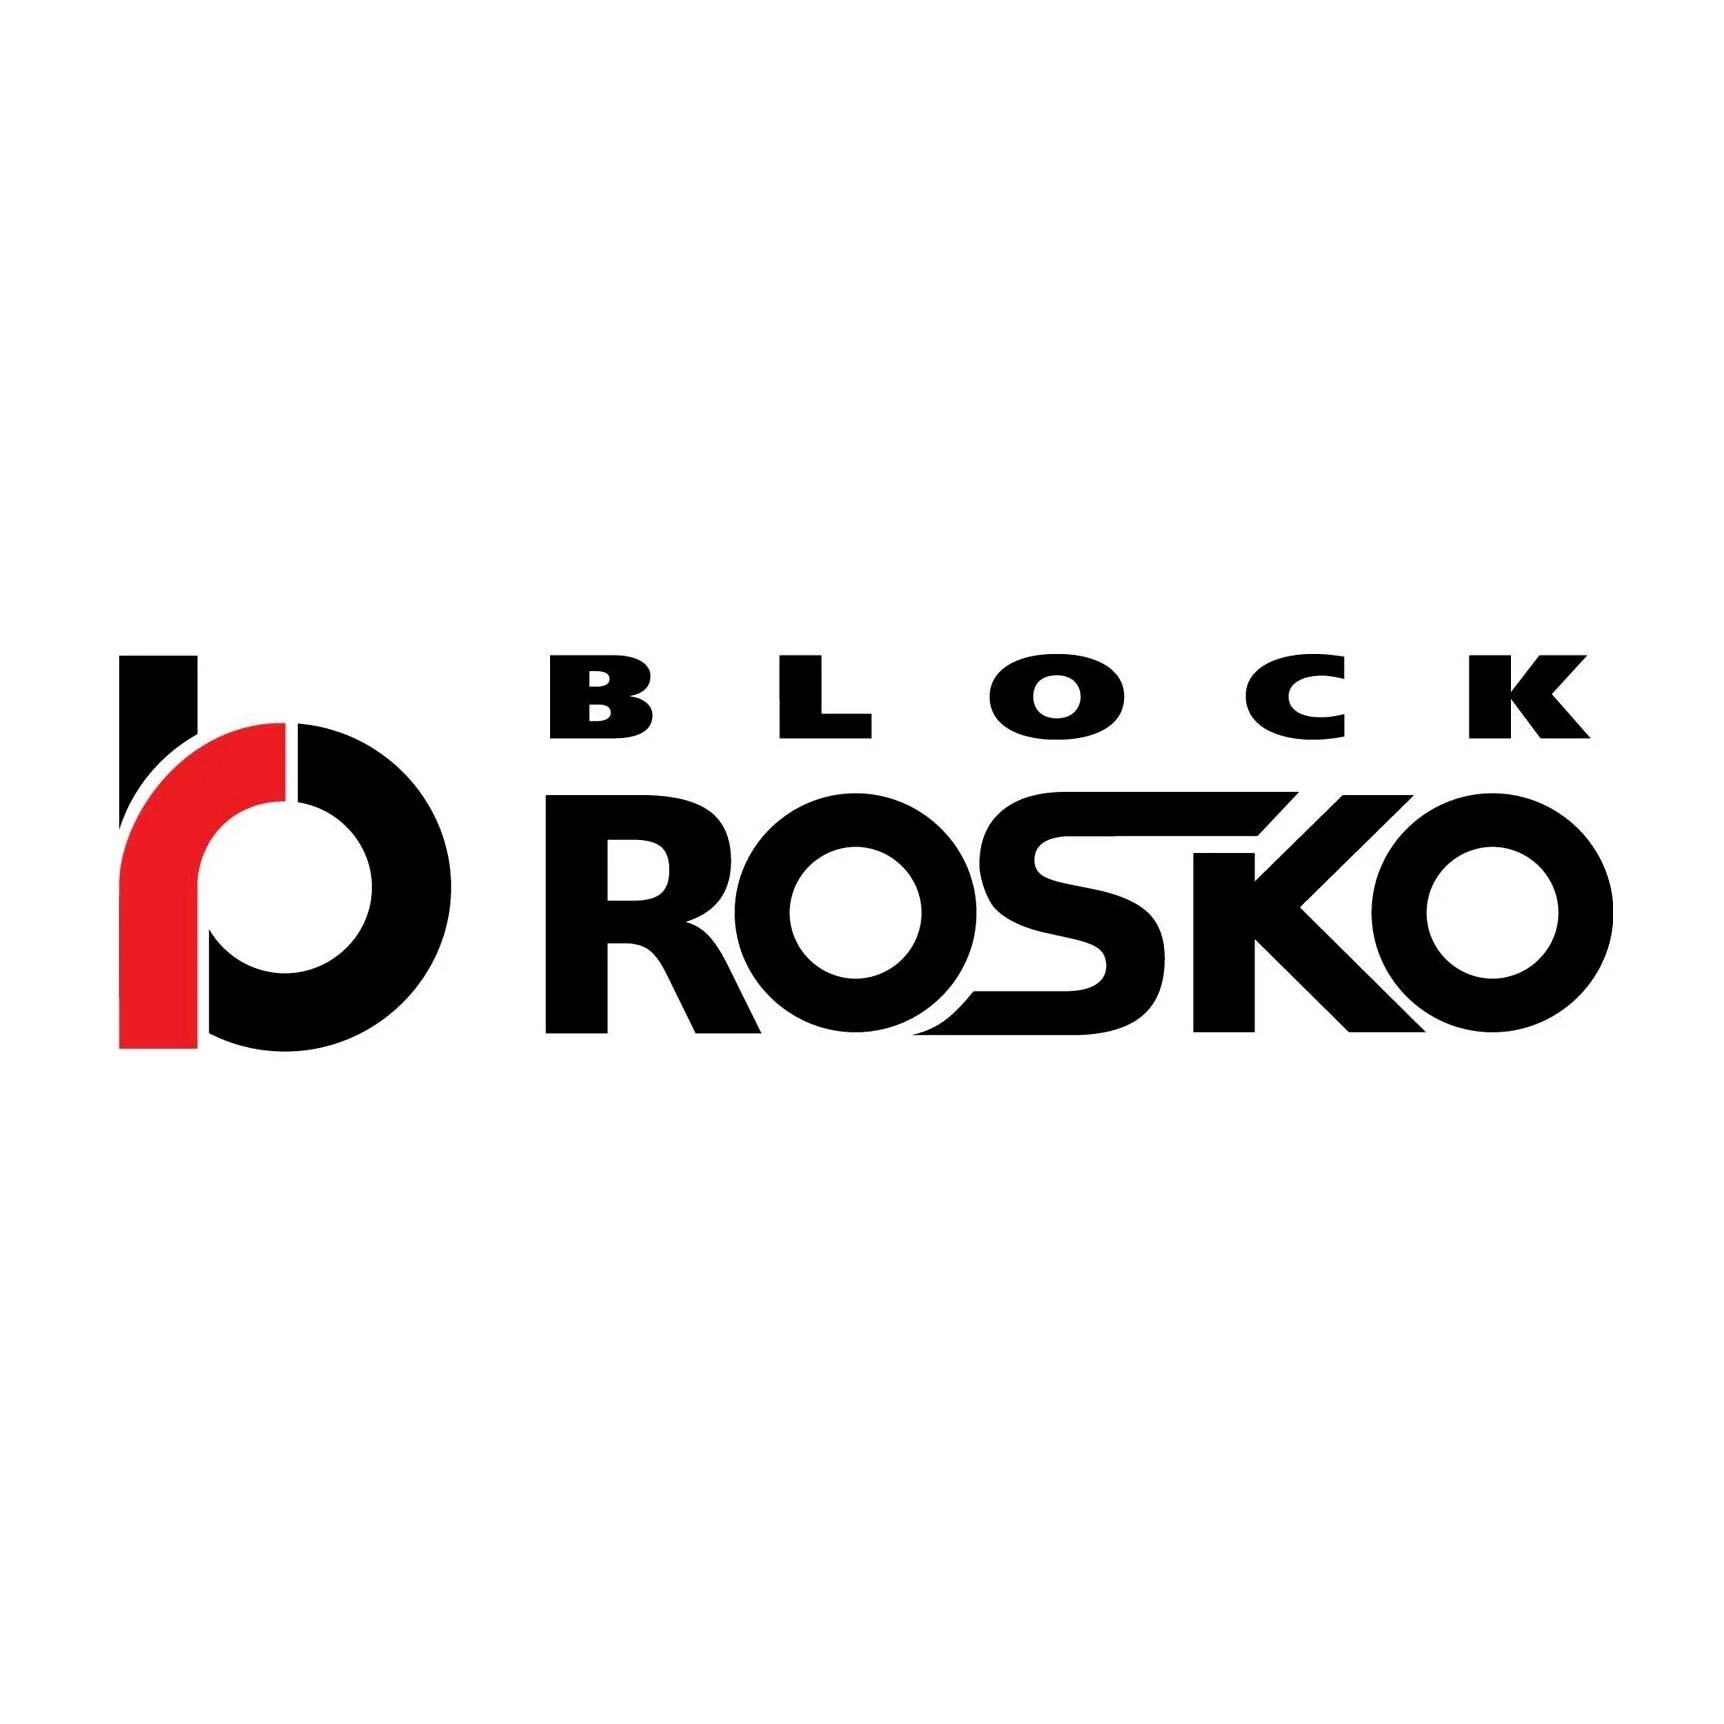 Блок роско иваново. Блок Роско логотип. Автоэкспресс блок Роско. Логотип Роско Иваново.